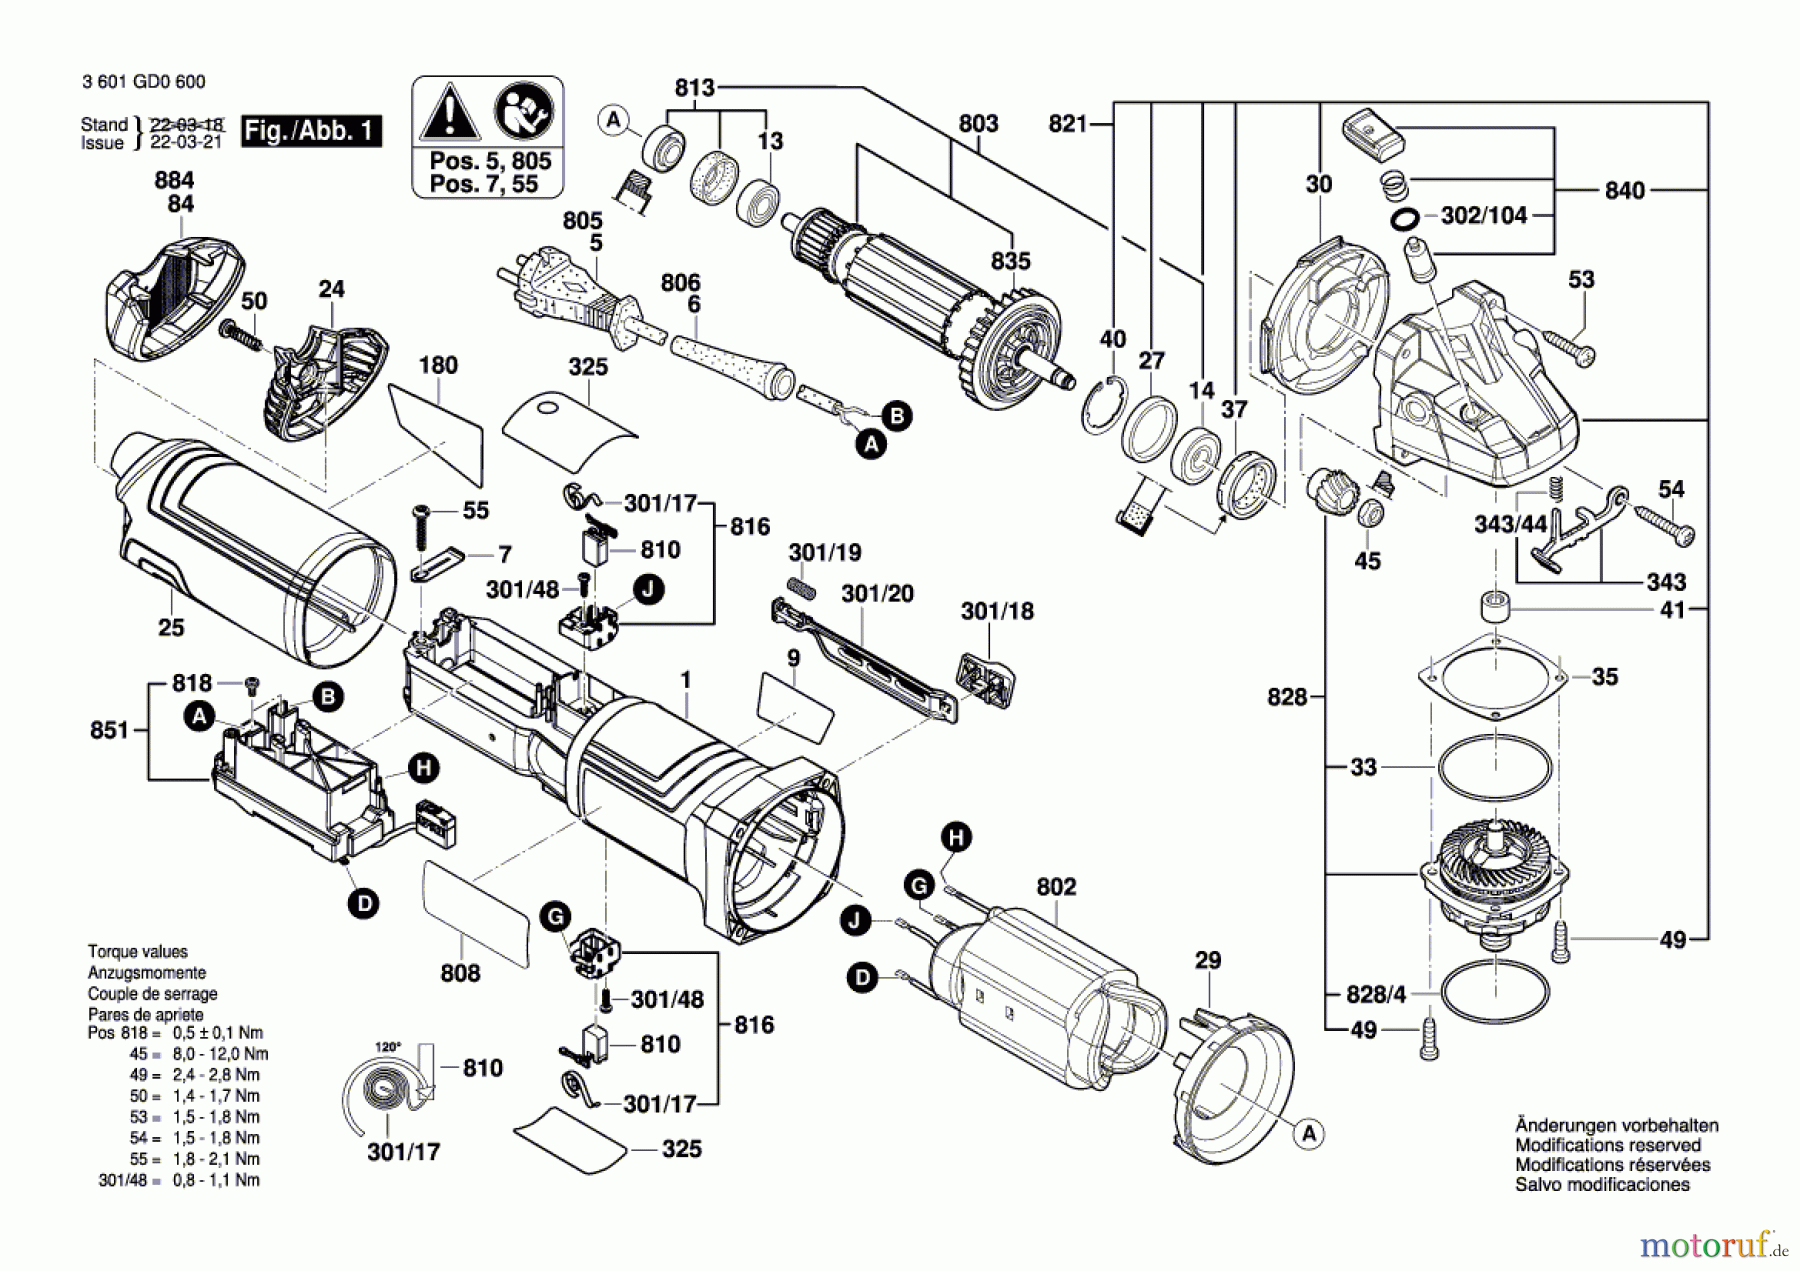  Bosch Werkzeug Winkelschleifer GWS 17-150 S Seite 1